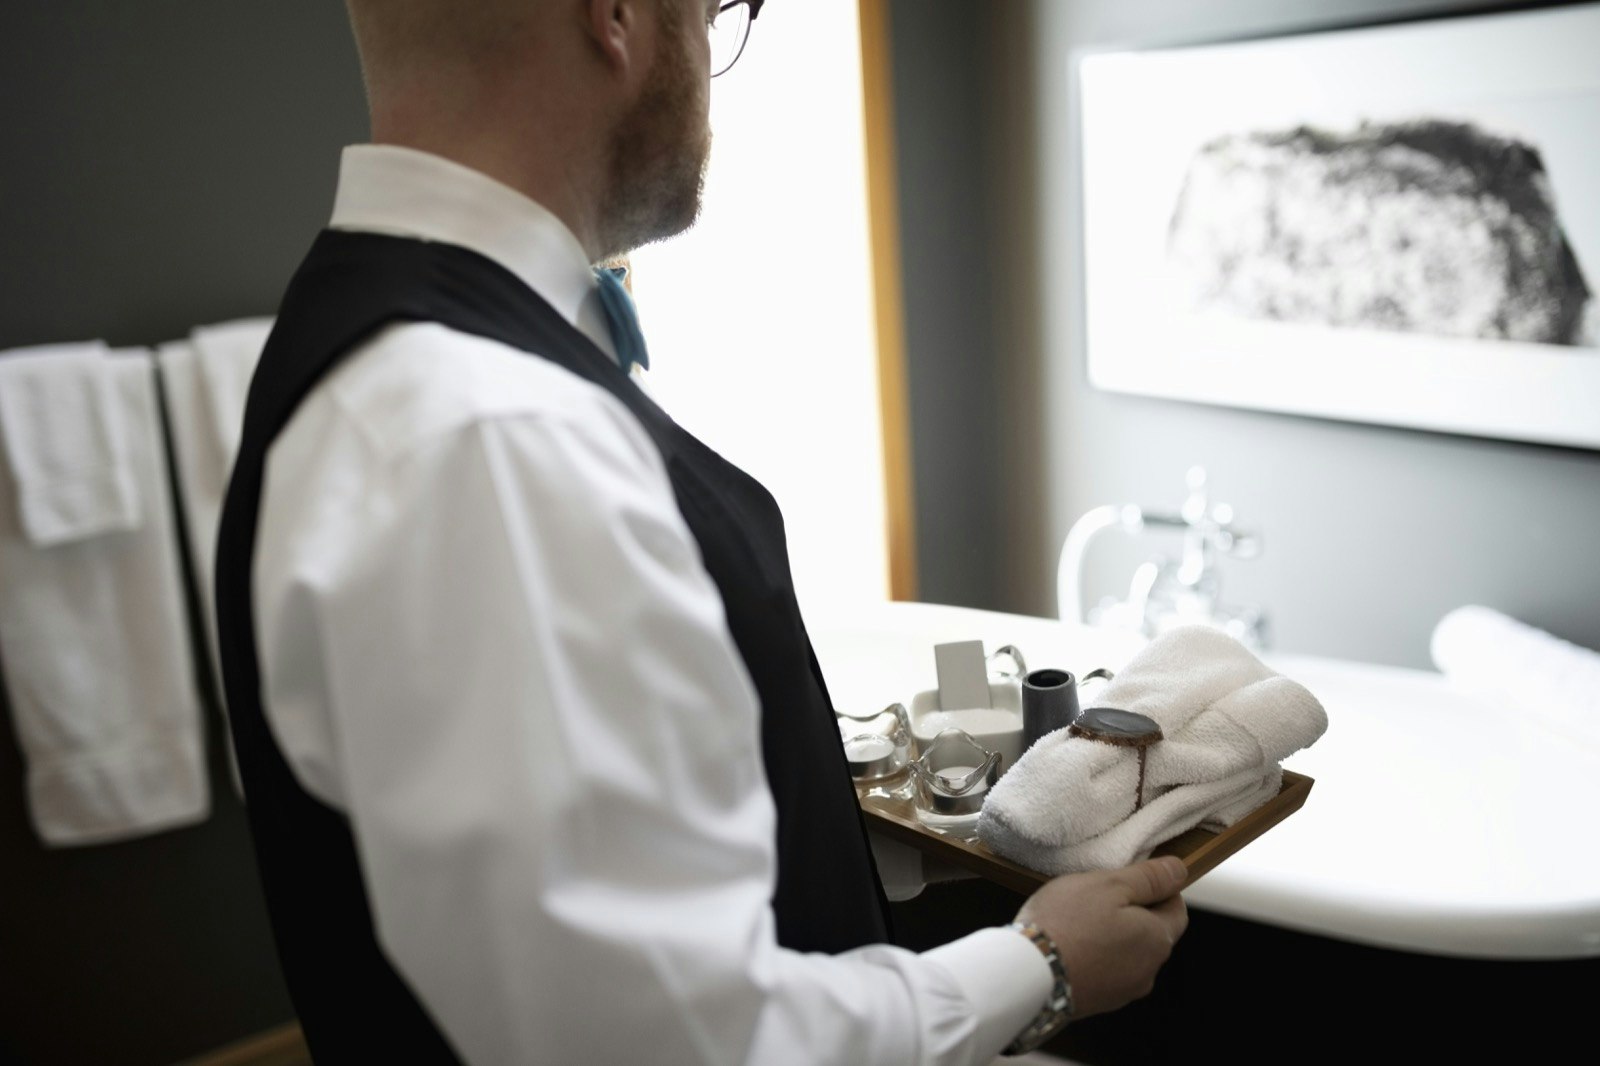 A butler prepares a bathroom for a guest.